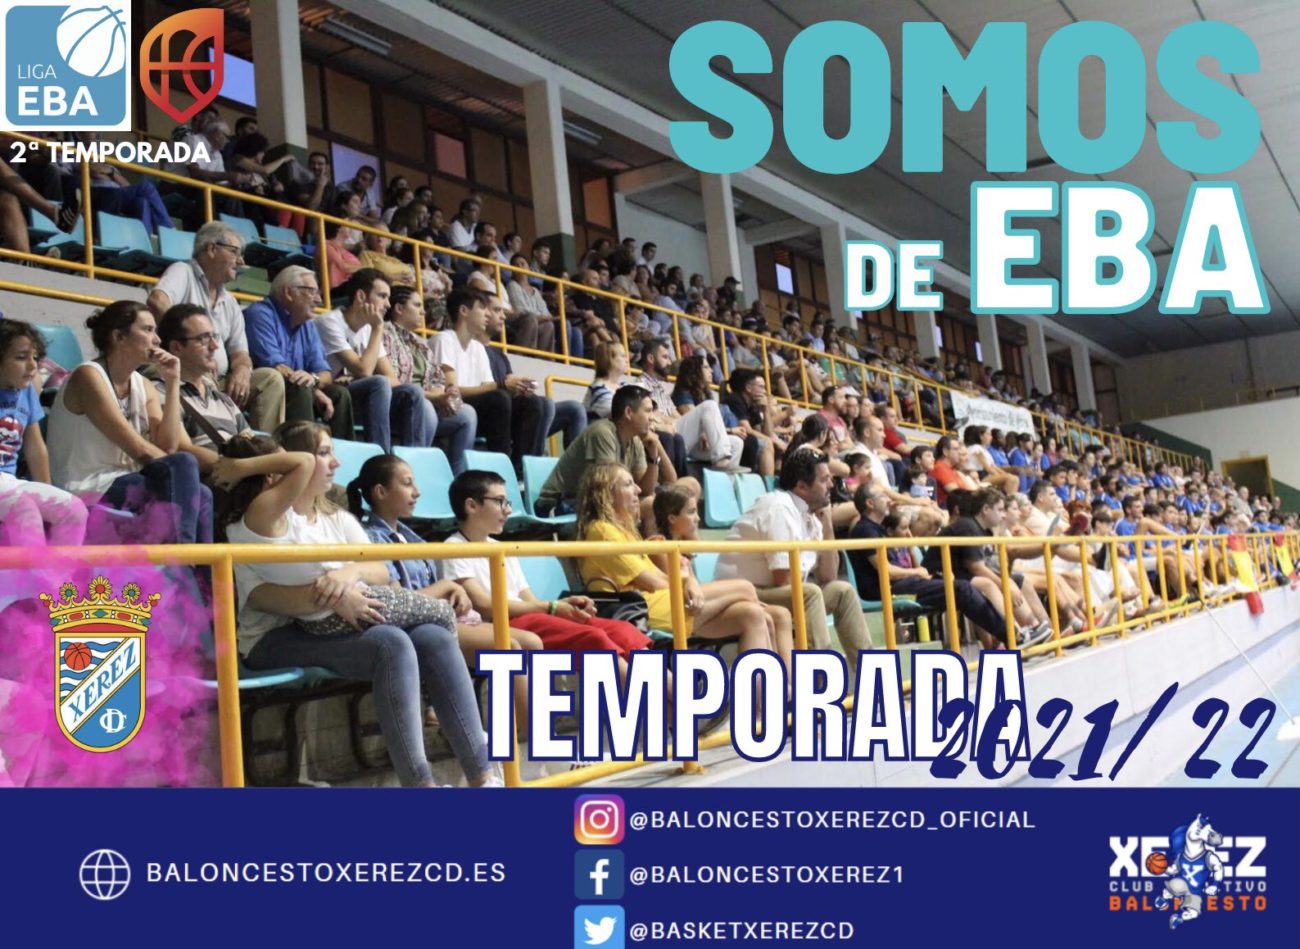 EL XEREZ CLUB DEPORTIVO DE BALONCESTO CONTINUARÁ UNA TEMPORADA MÁS EN LIGA  EBA!!! | Baloncesto Xerez CD